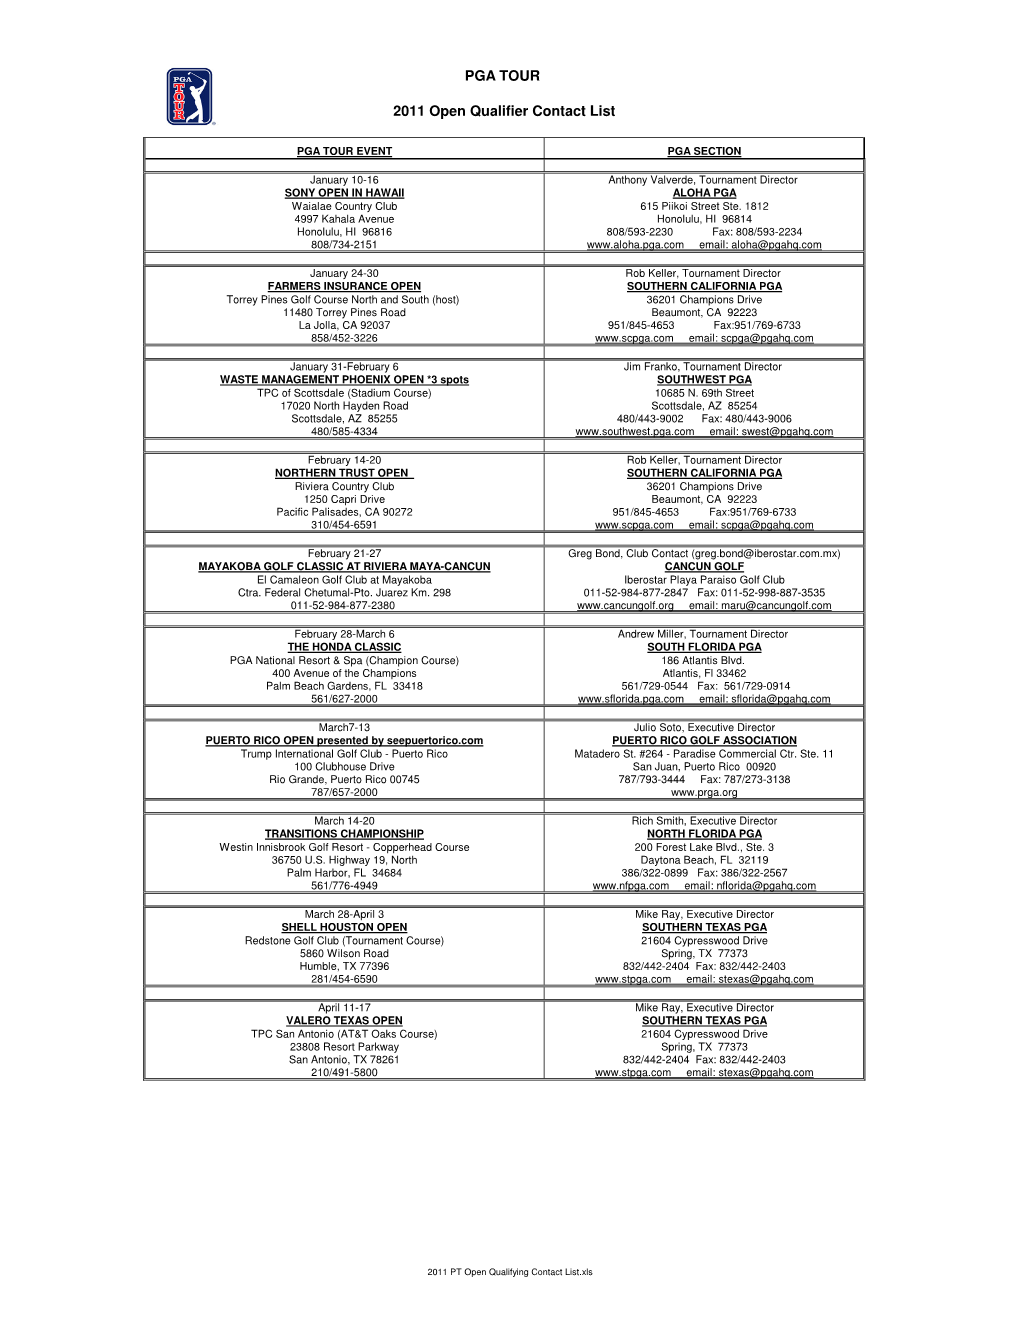 2011 PT Open Qualifying Contact List.Xls PGA TOUR